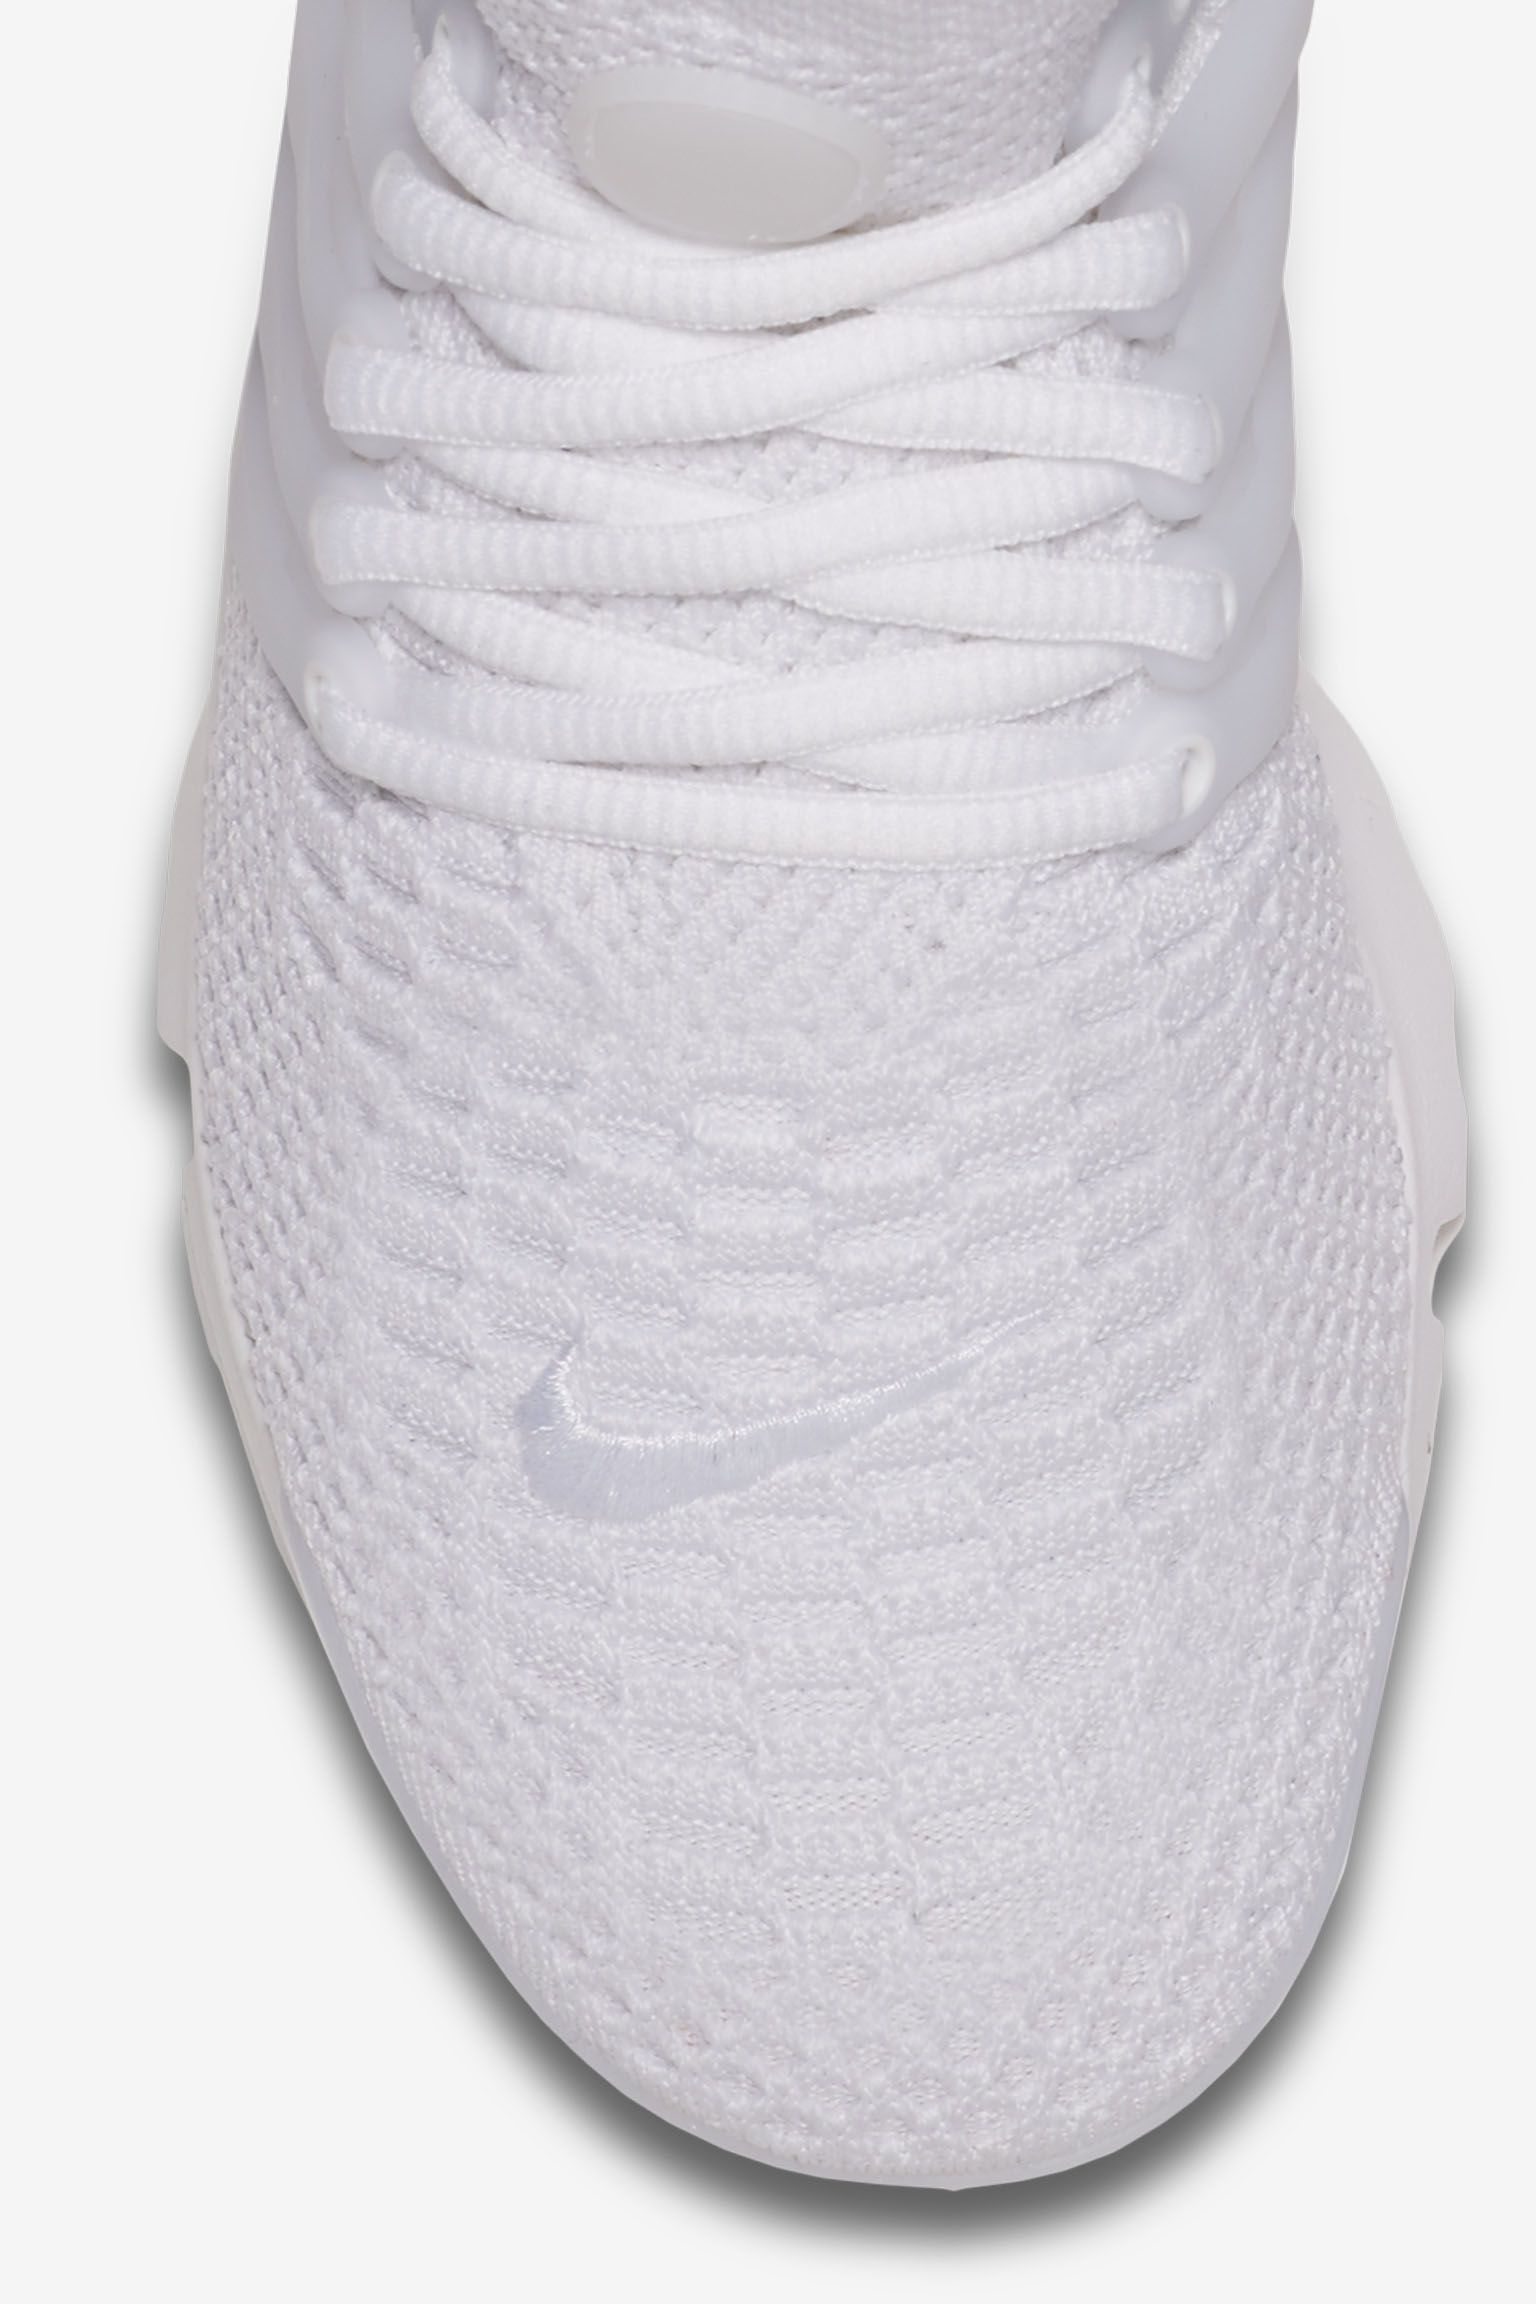 Women's Air Presto Ultra Flyknit 'Triple White' Release Date. Nike SNKRS